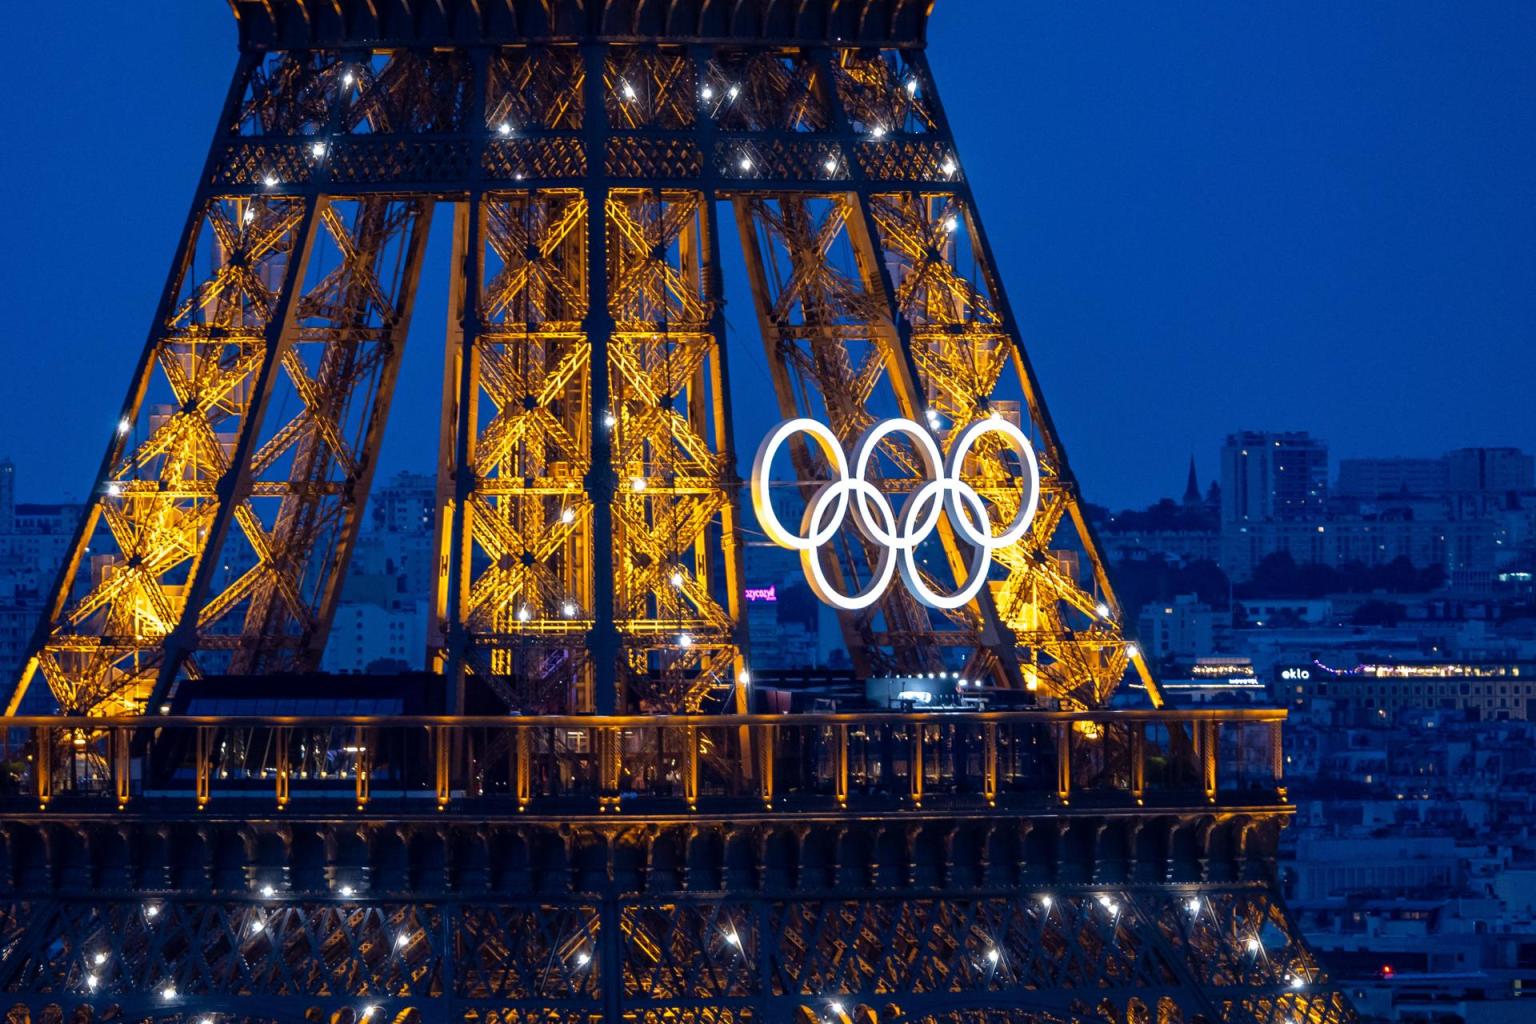 París 2024 busca asombrar al mundo con su ceremonia inaugural en el Sena